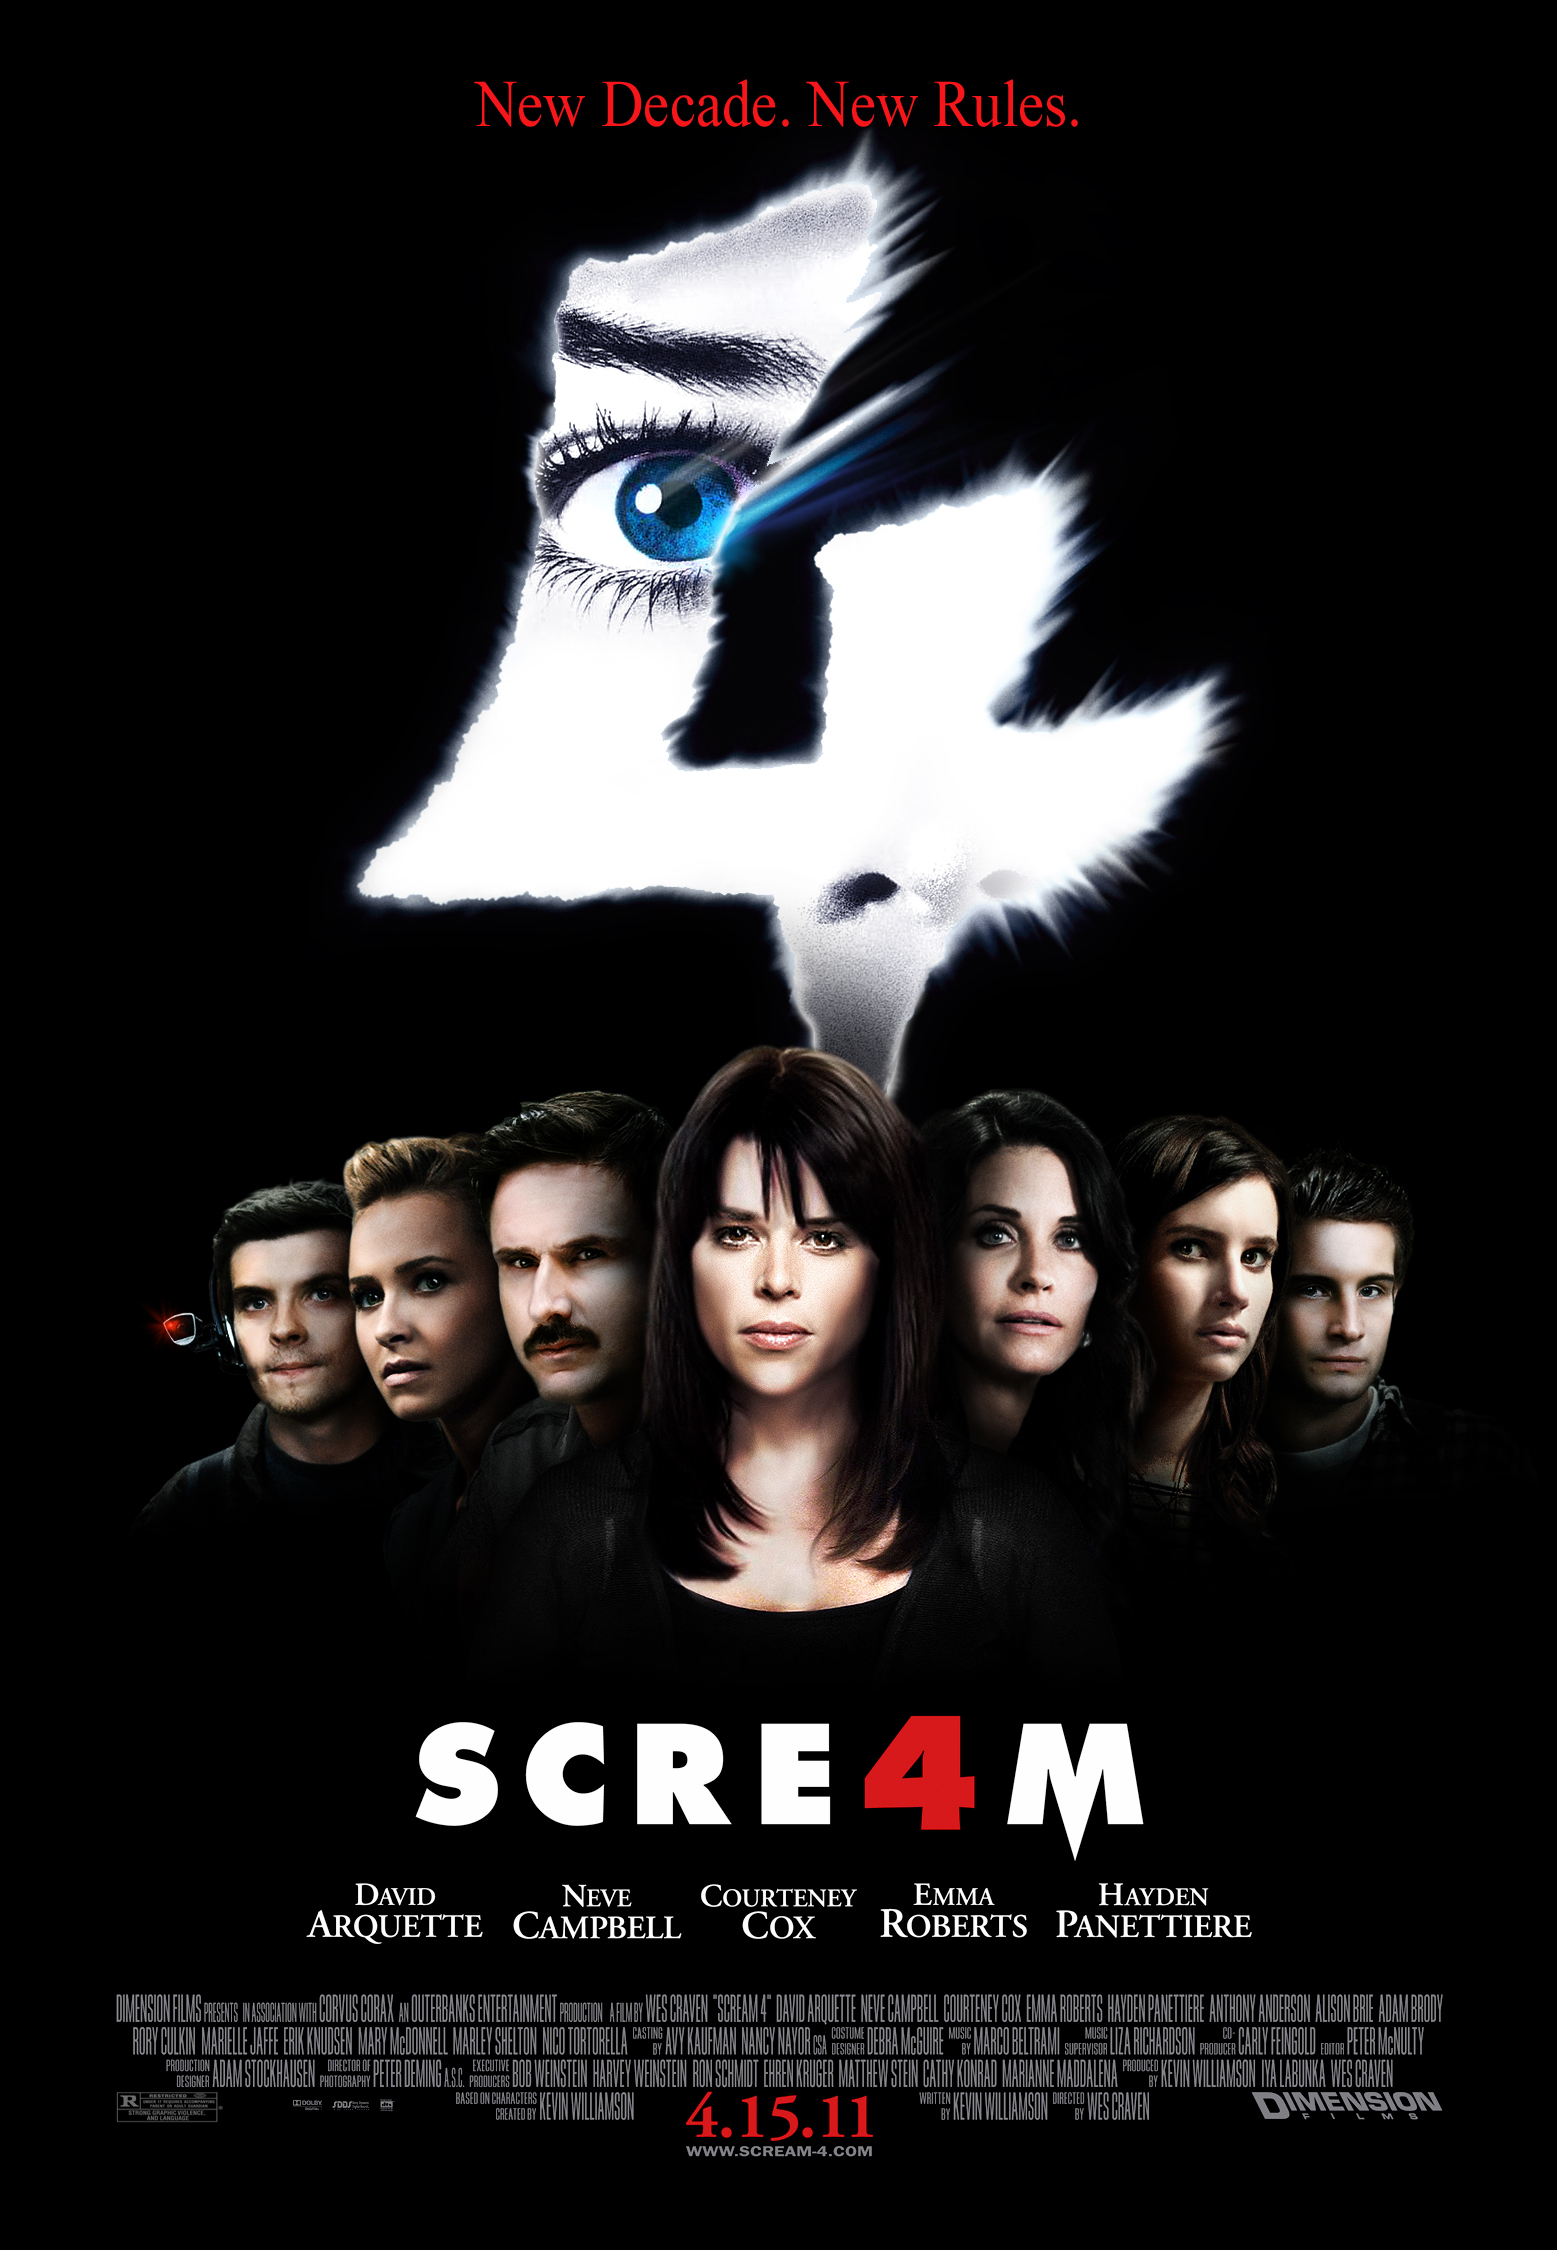 Scream Queens (season 2) - Wikipedia